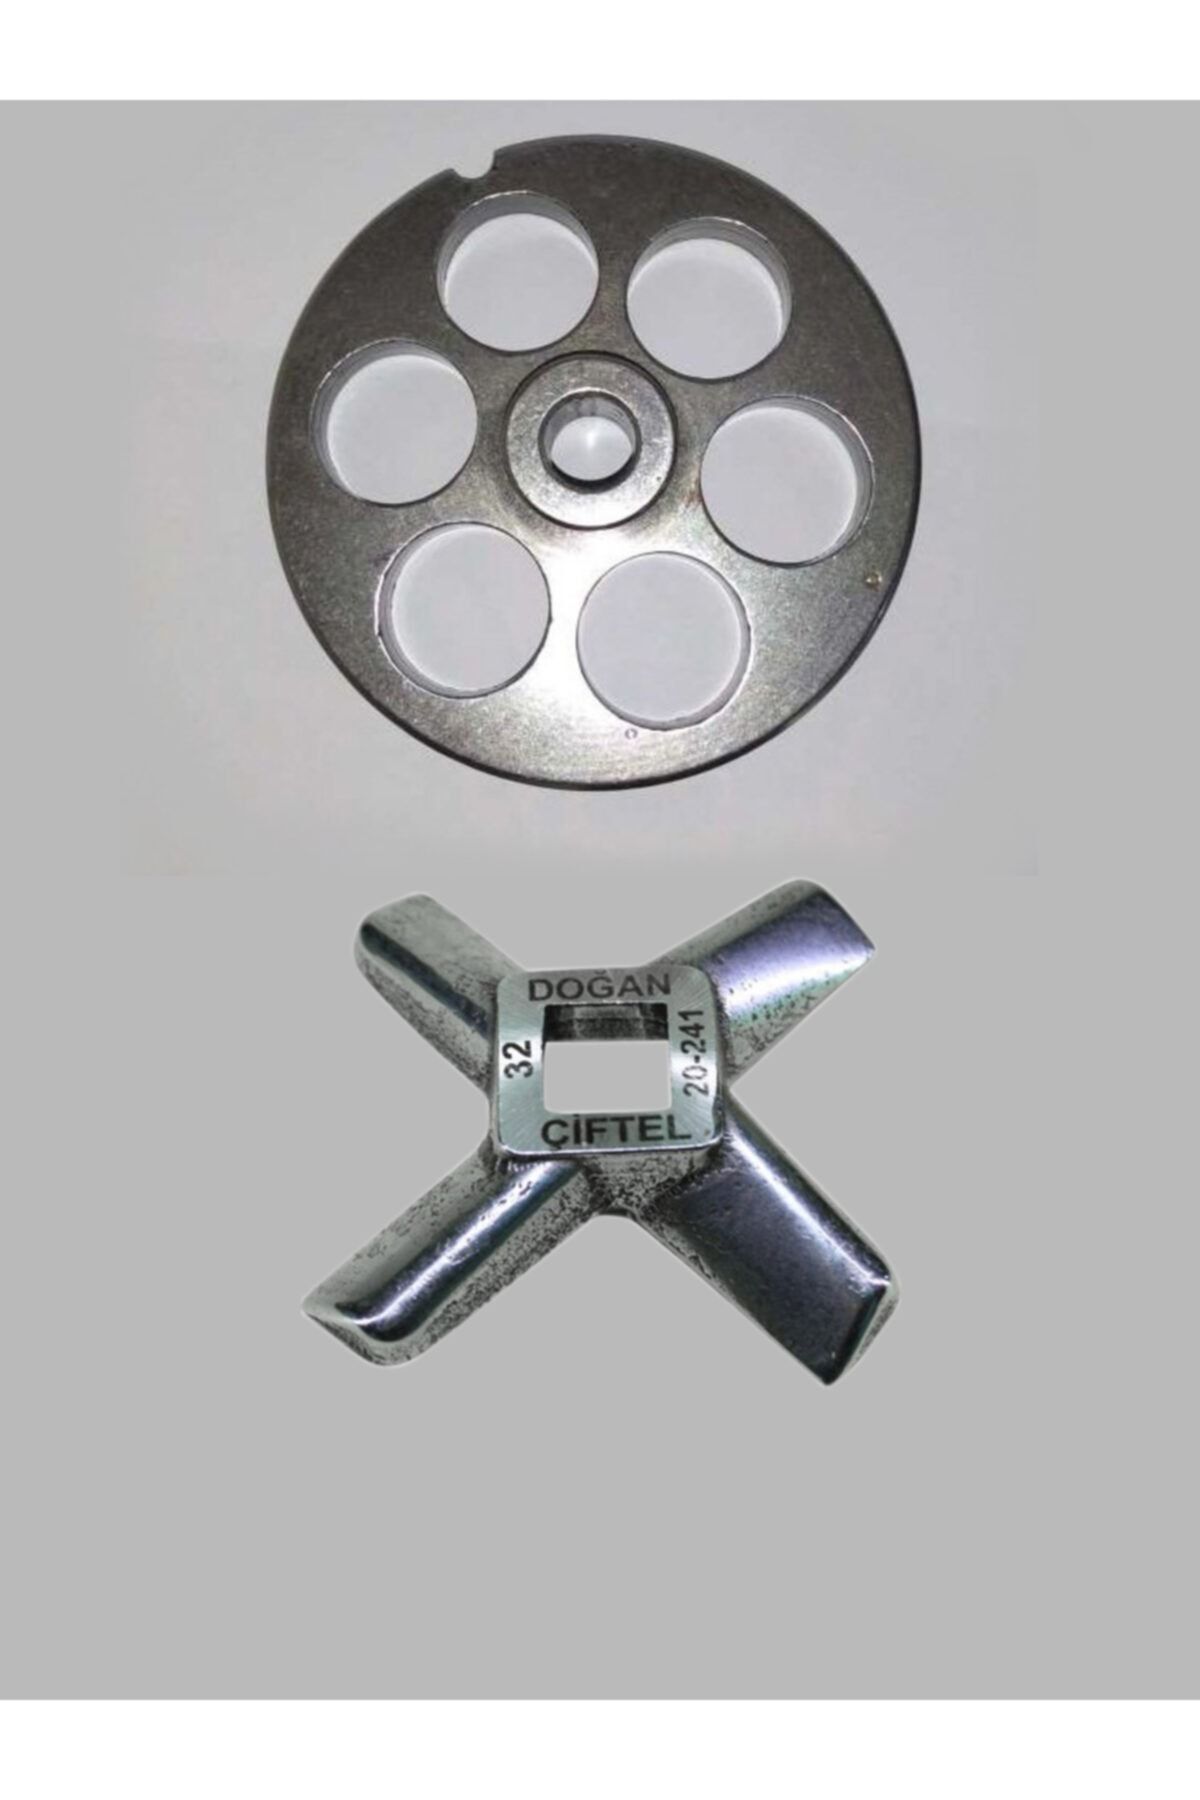 DOĞAN ÇİFTEL 32lik Mutfak Tipi Kıyma Makinesi İçin Ayna Ve Bıçak 25 mm